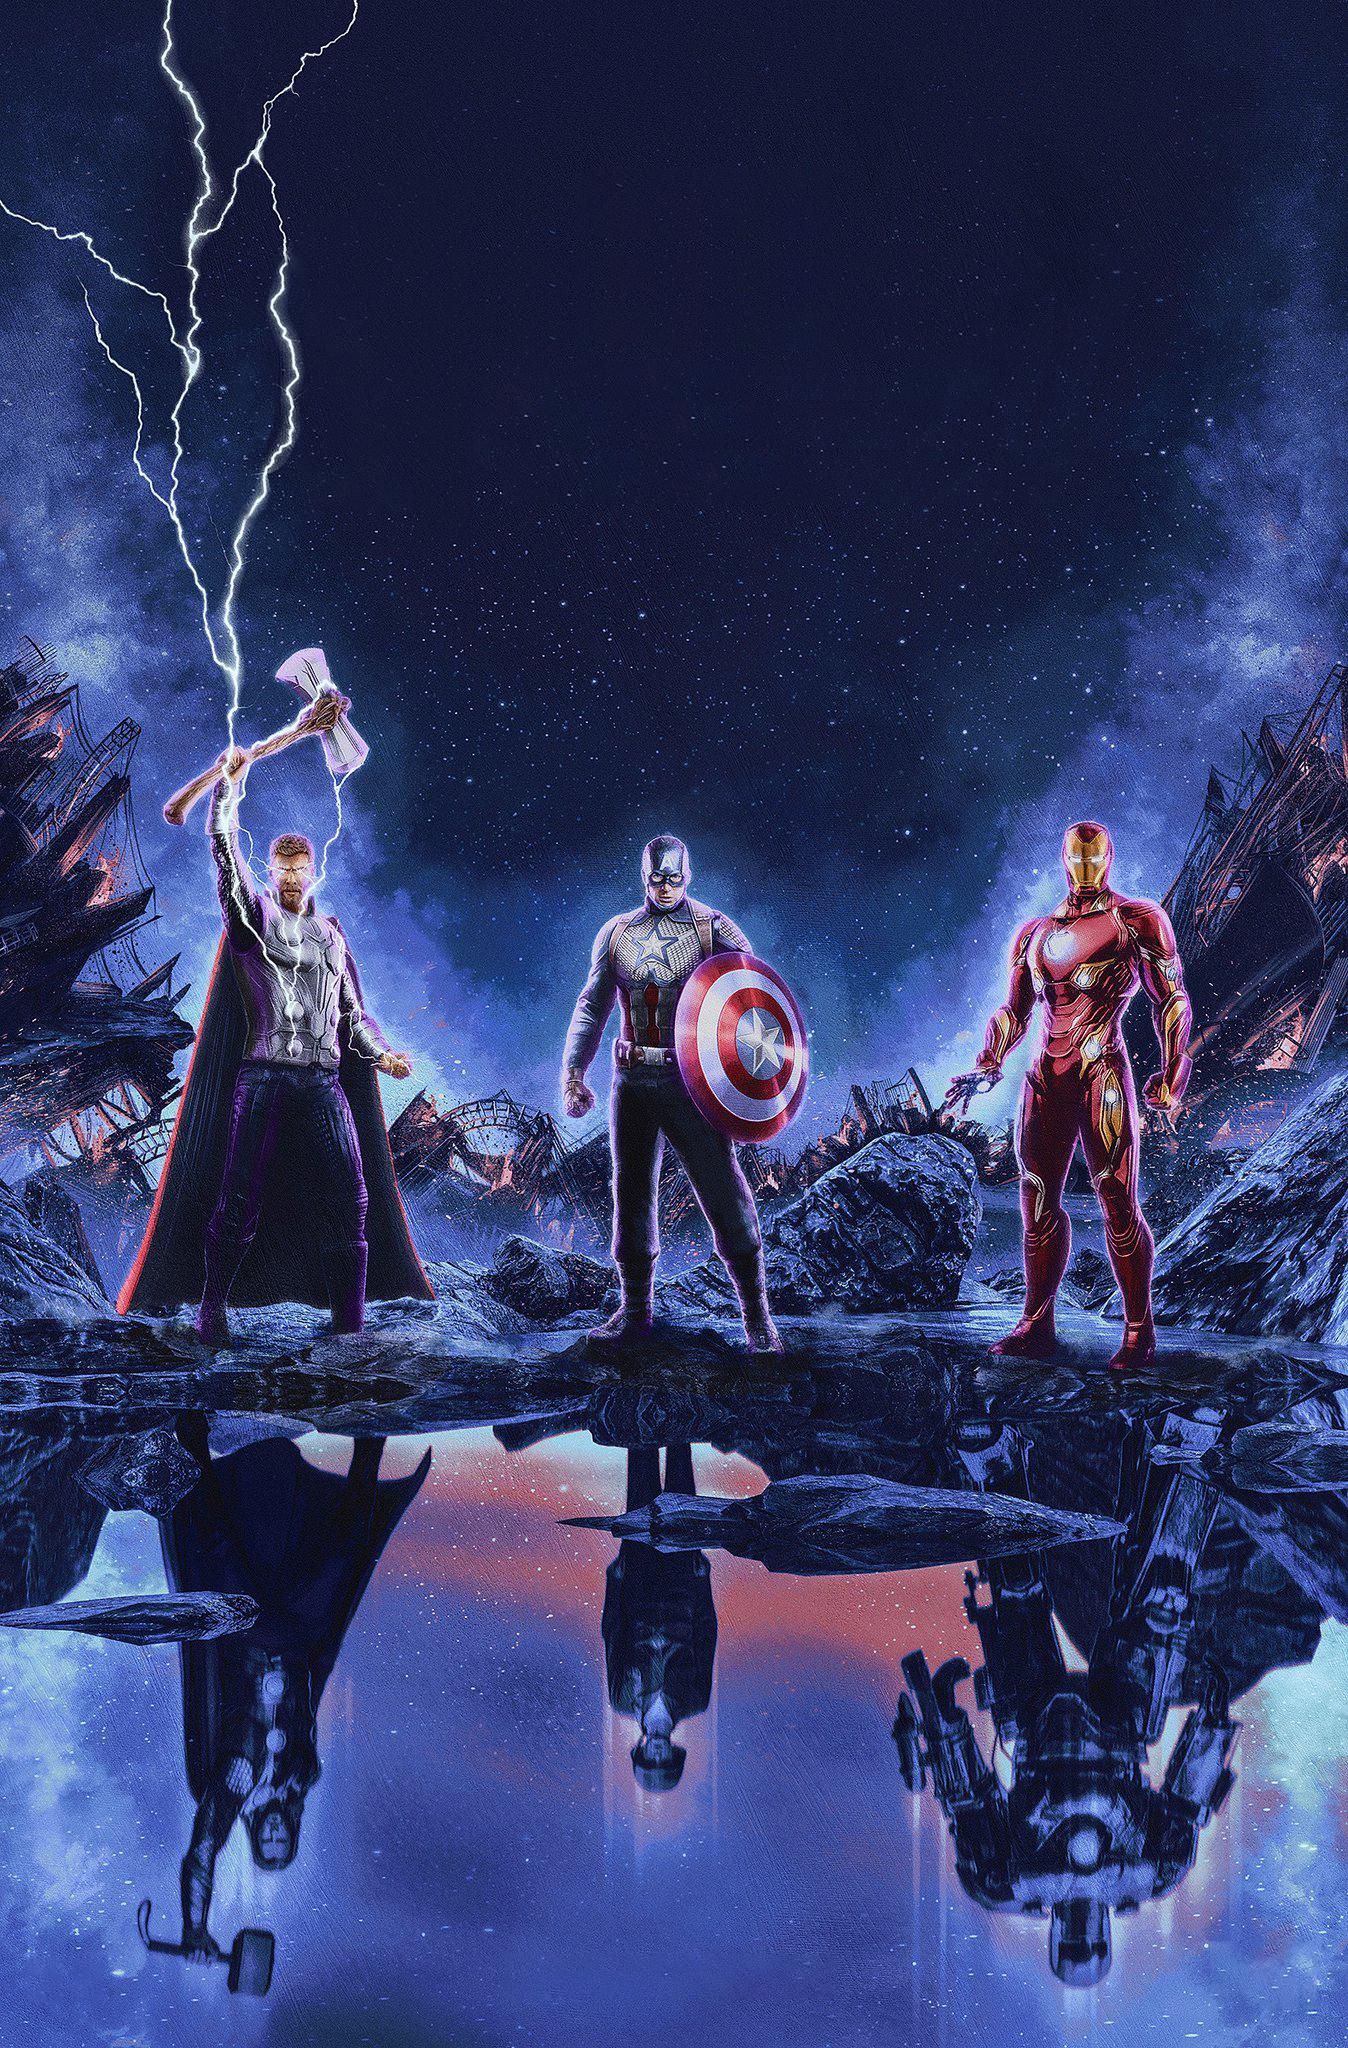 Promotionaltextless Endgame Poster By Skinnercreative - Avengers Endgame Movie Poster , HD Wallpaper & Backgrounds